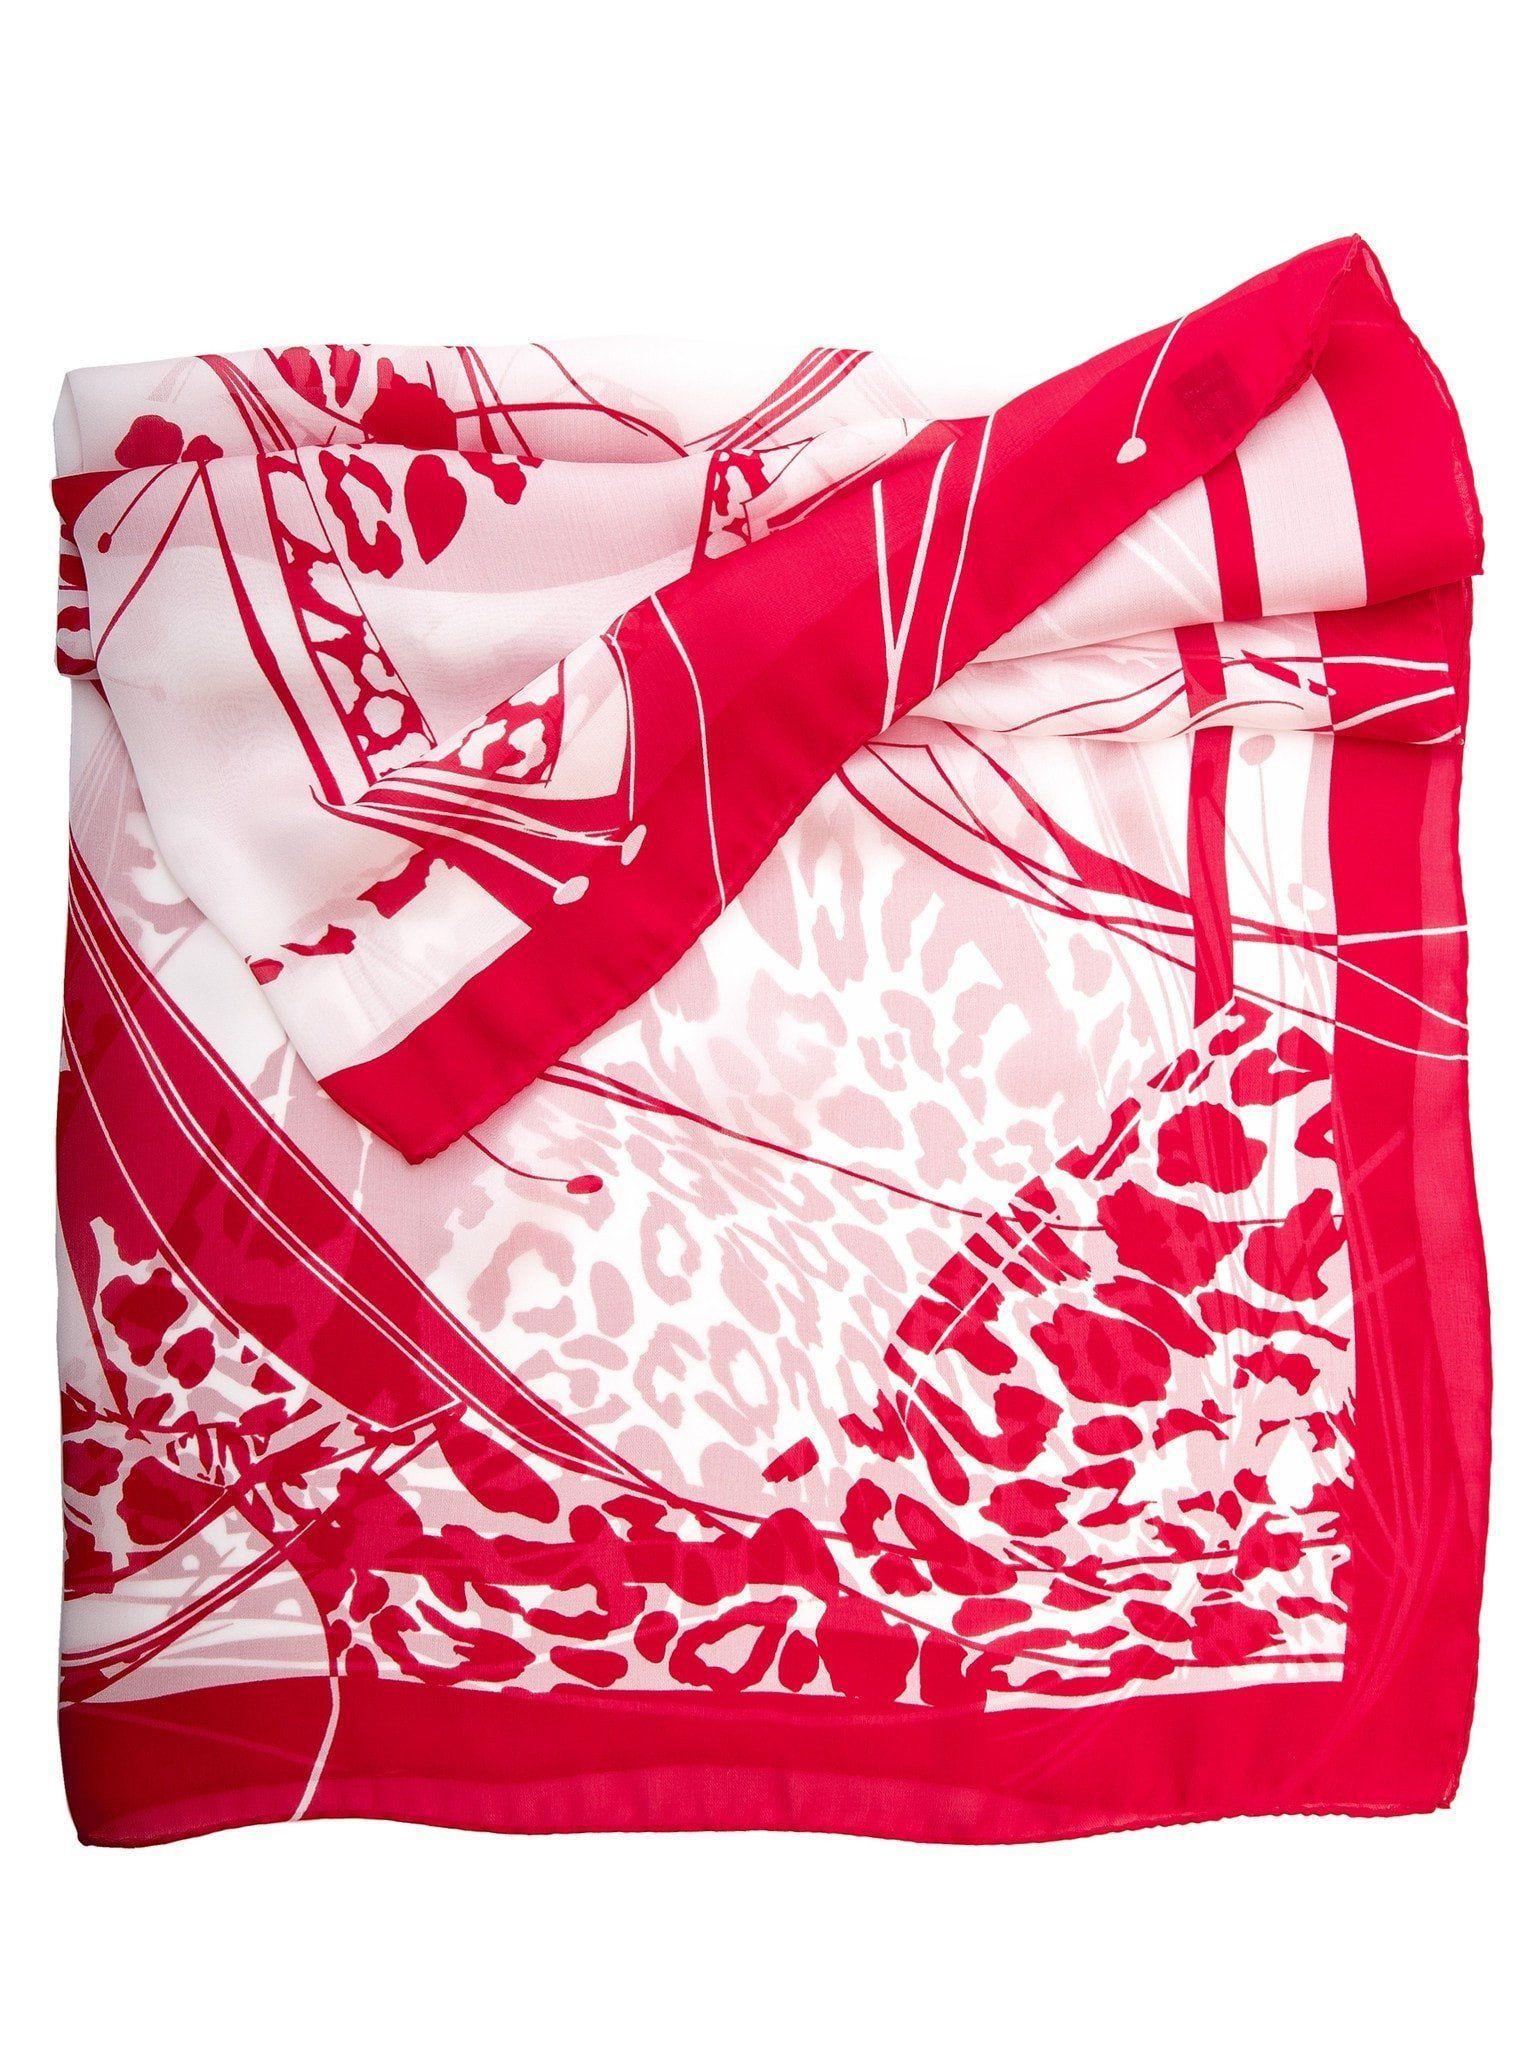 Italian Red White Square Logo - Italian Red Leopard Print Silk Chiffon Square Scarf